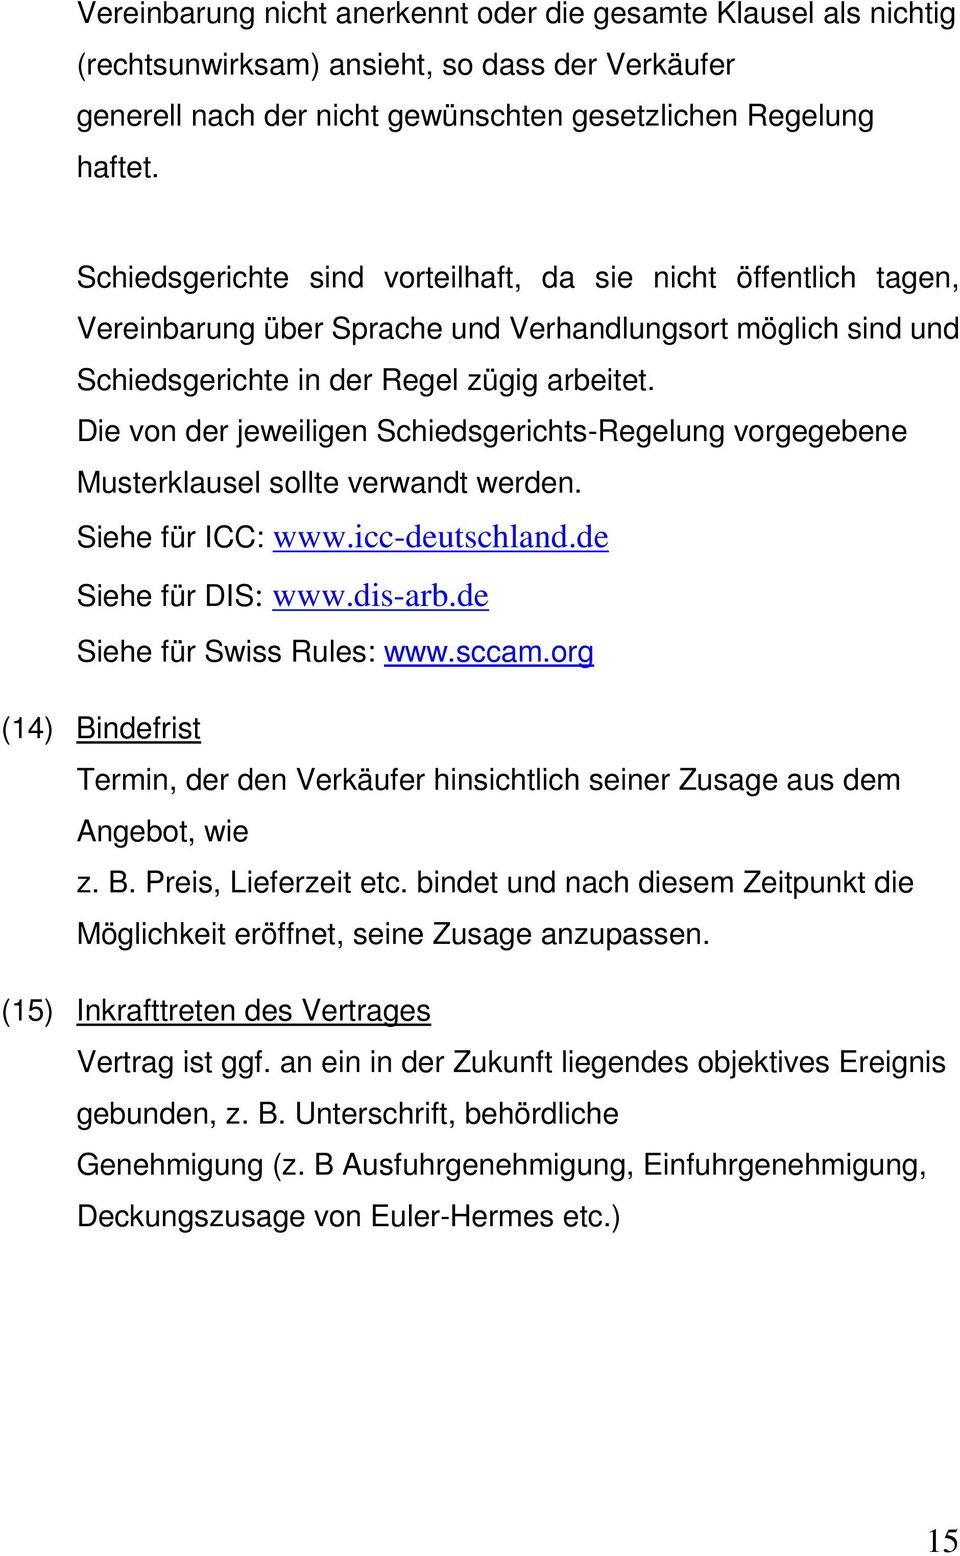 Die von der jeweiligen Schiedsgerichts-Regelung vorgegebene Musterklausel sollte verwandt werden. Siehe für ICC: www.icc-deutschland.de Siehe für DIS: www.dis-arb.de Siehe für Swiss Rules: www.sccam.